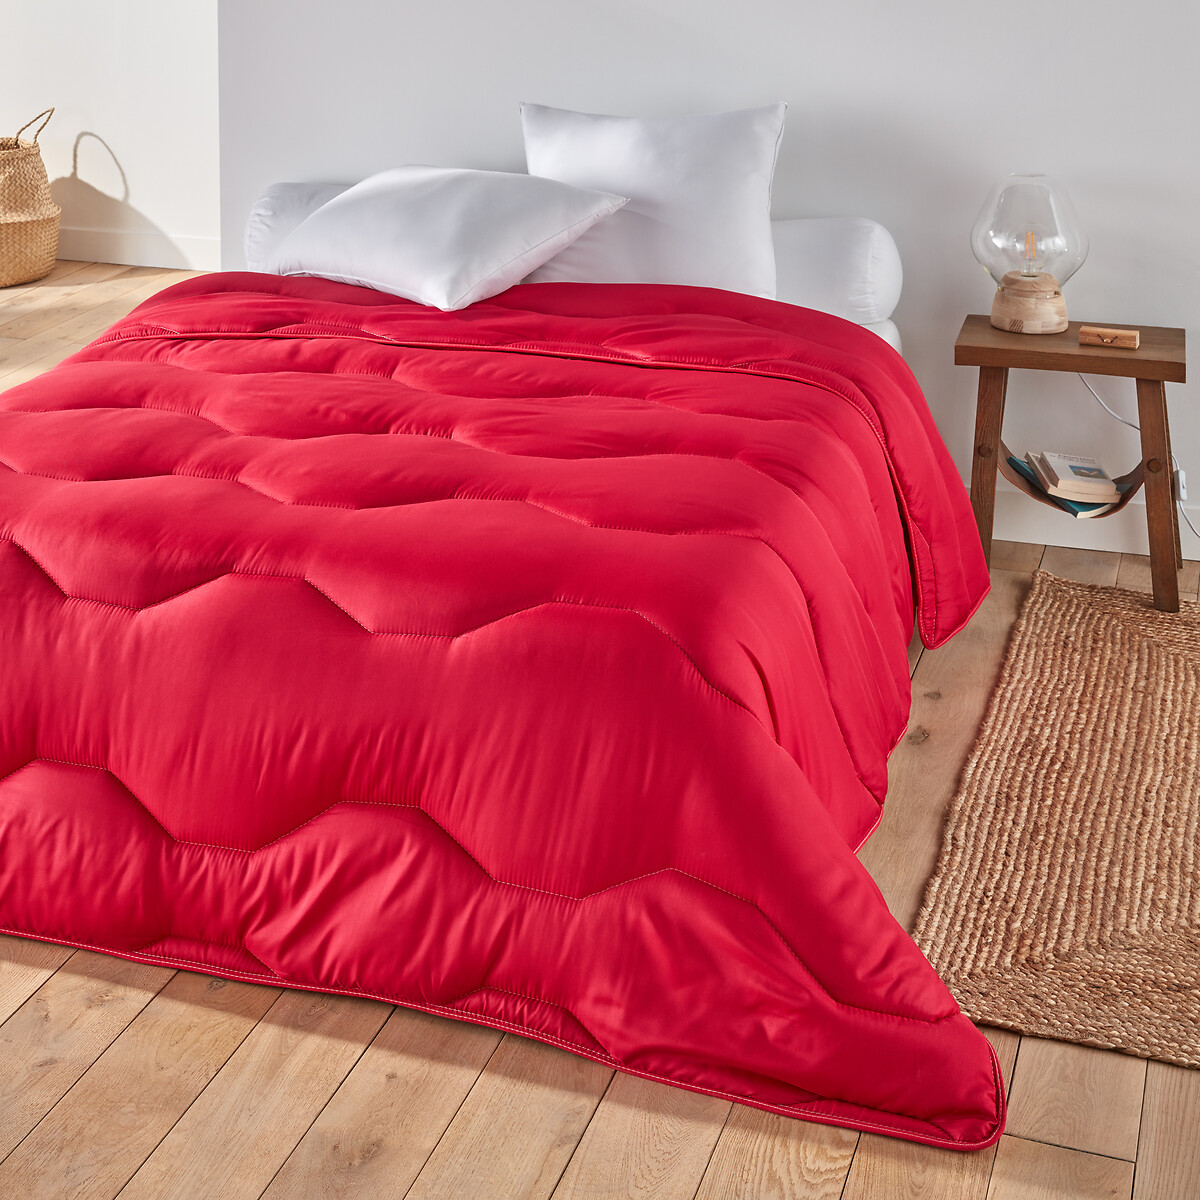 Одеяло La Redoute COLOR  полиэстера  гм 200 x 200 см красный, размер 200 x 200 см - фото 1